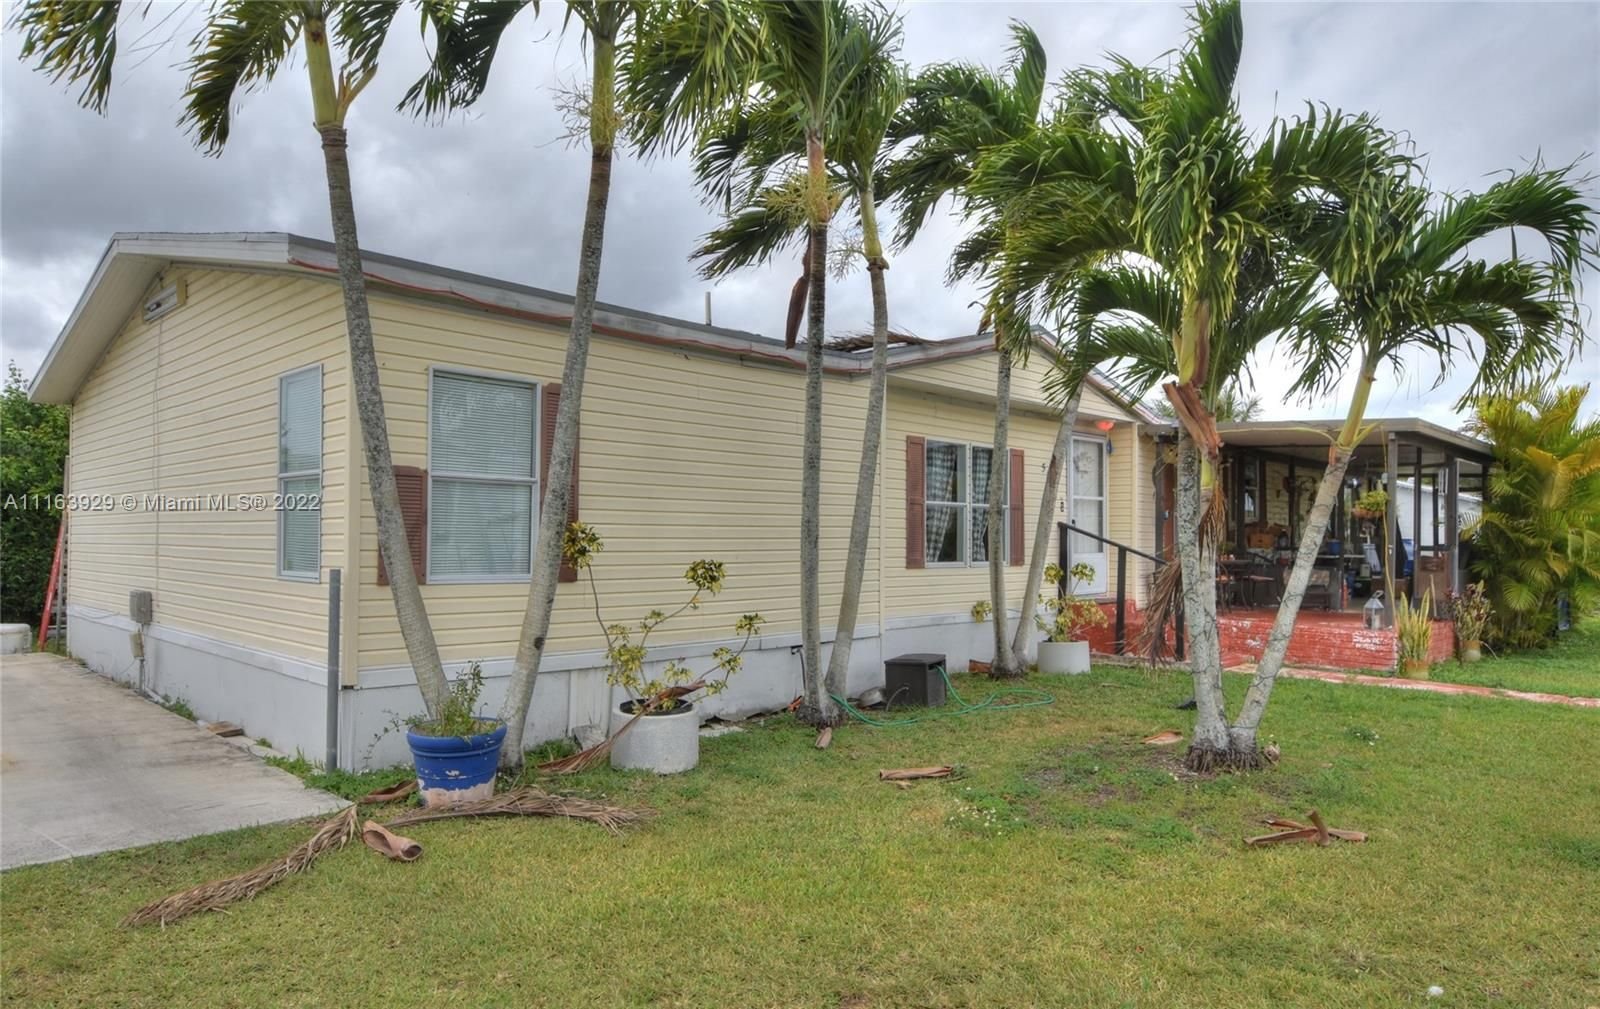 Real estate property located at 19800 180th #580, Miami-Dade County, Miami, FL